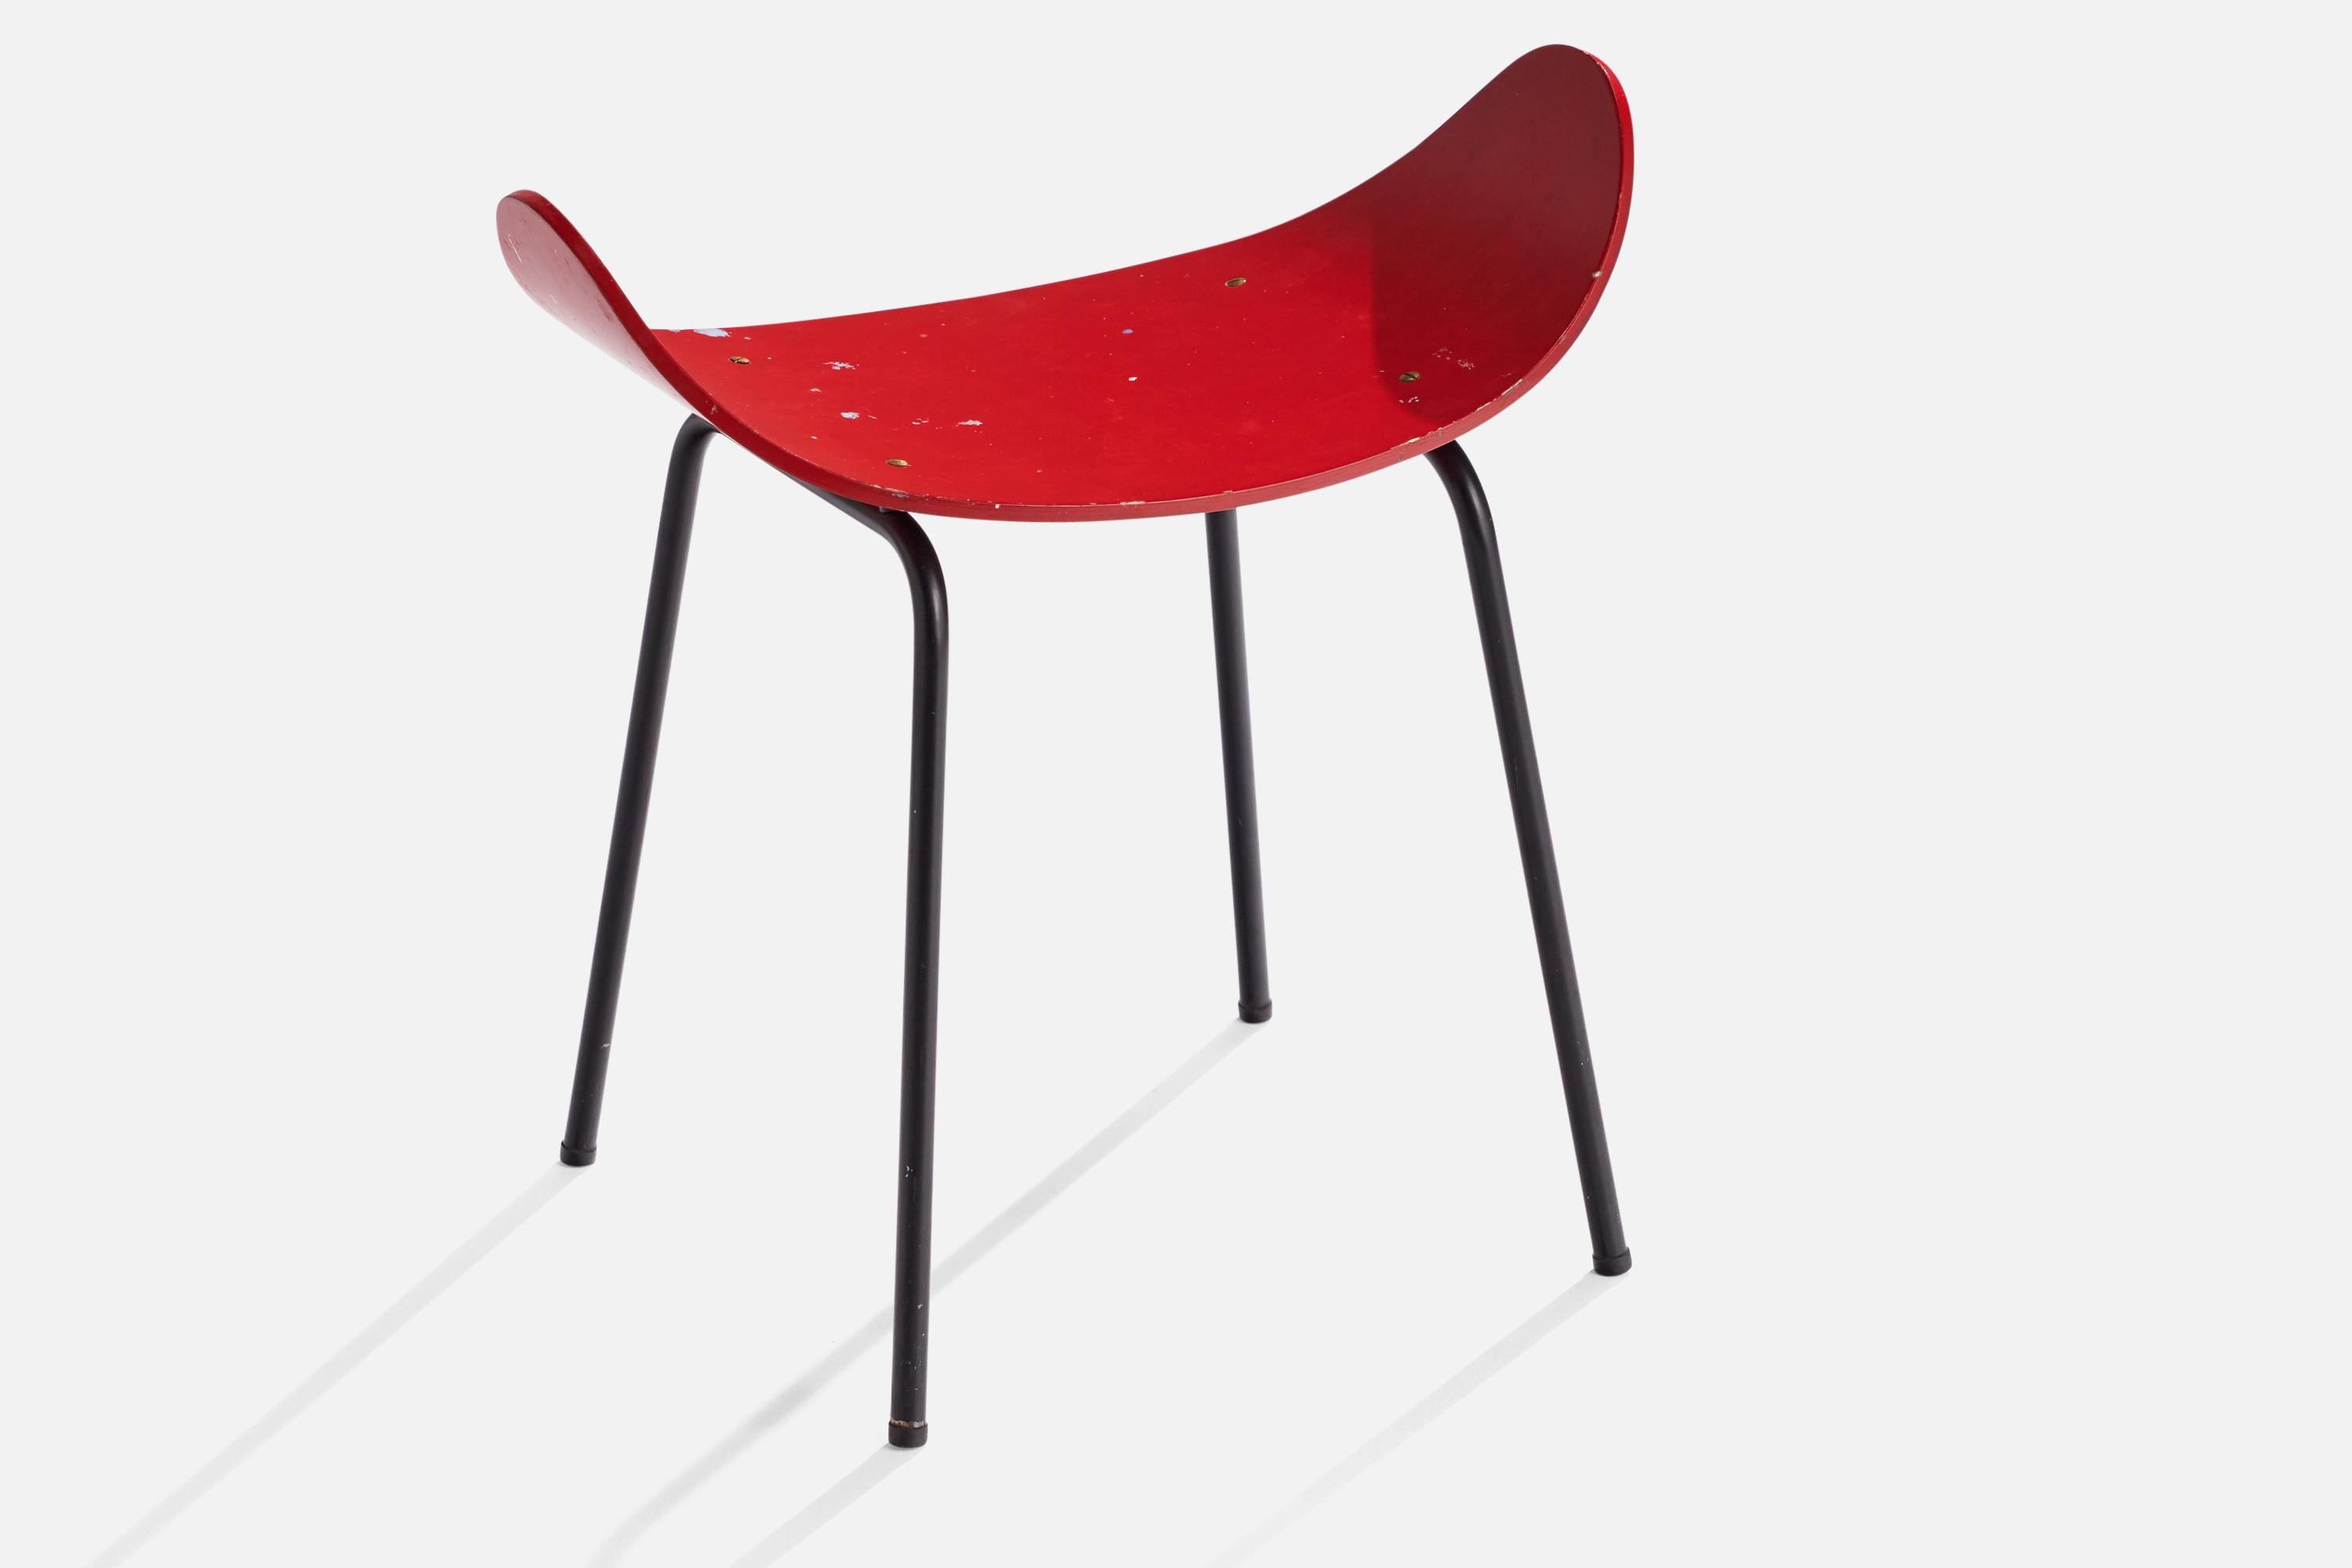 Hocker aus rot gestrichenem Sperrholz und schwarz lackiertem Metall, entworfen von Olof Kettunen und hergestellt von J.Merivaara Oy, Finnland, 1950er Jahre

Sitzhöhe 16